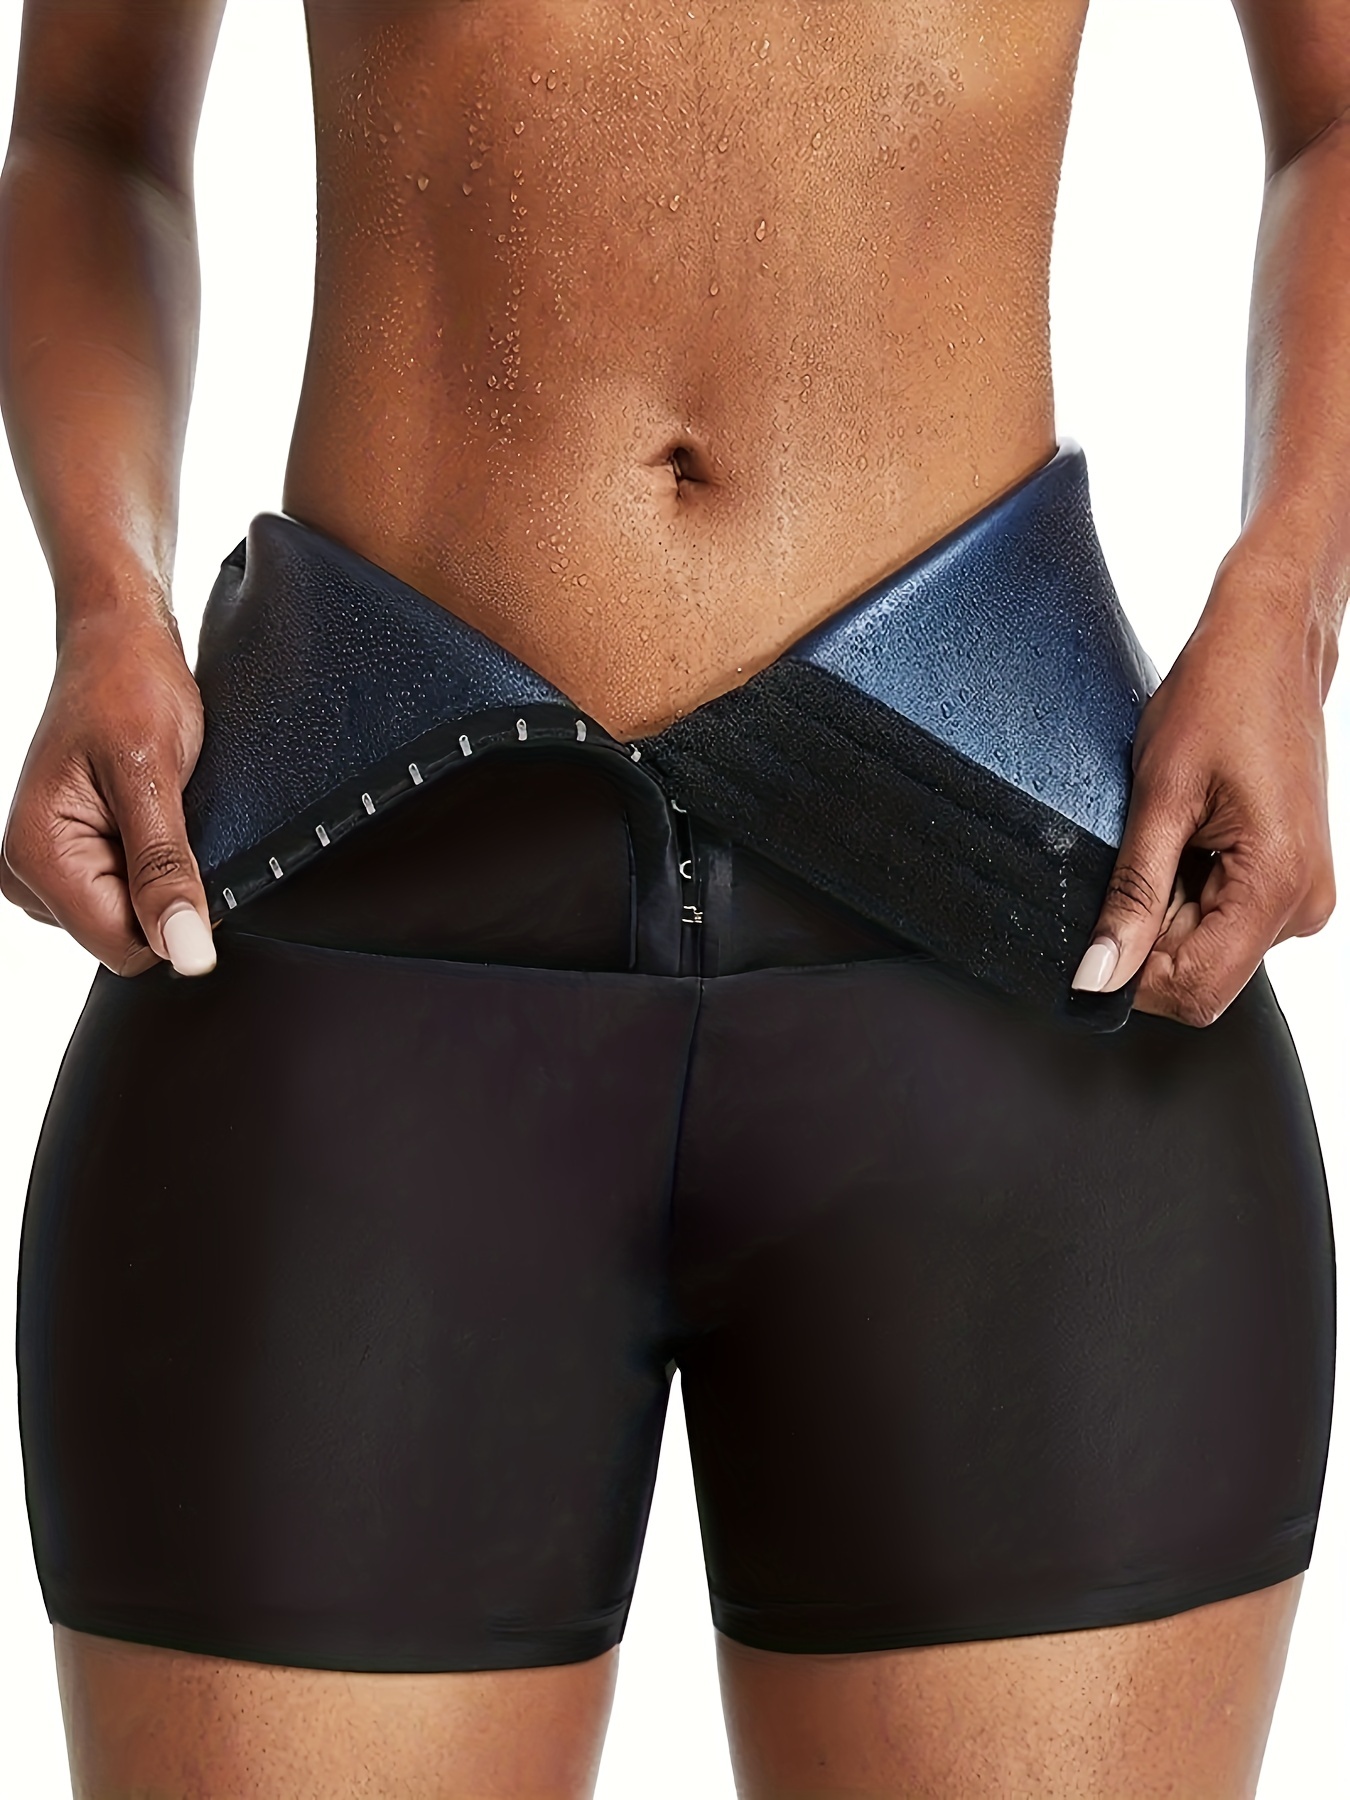 Women Tummy Control All-Day Boned High-Waist Short Pants Butt